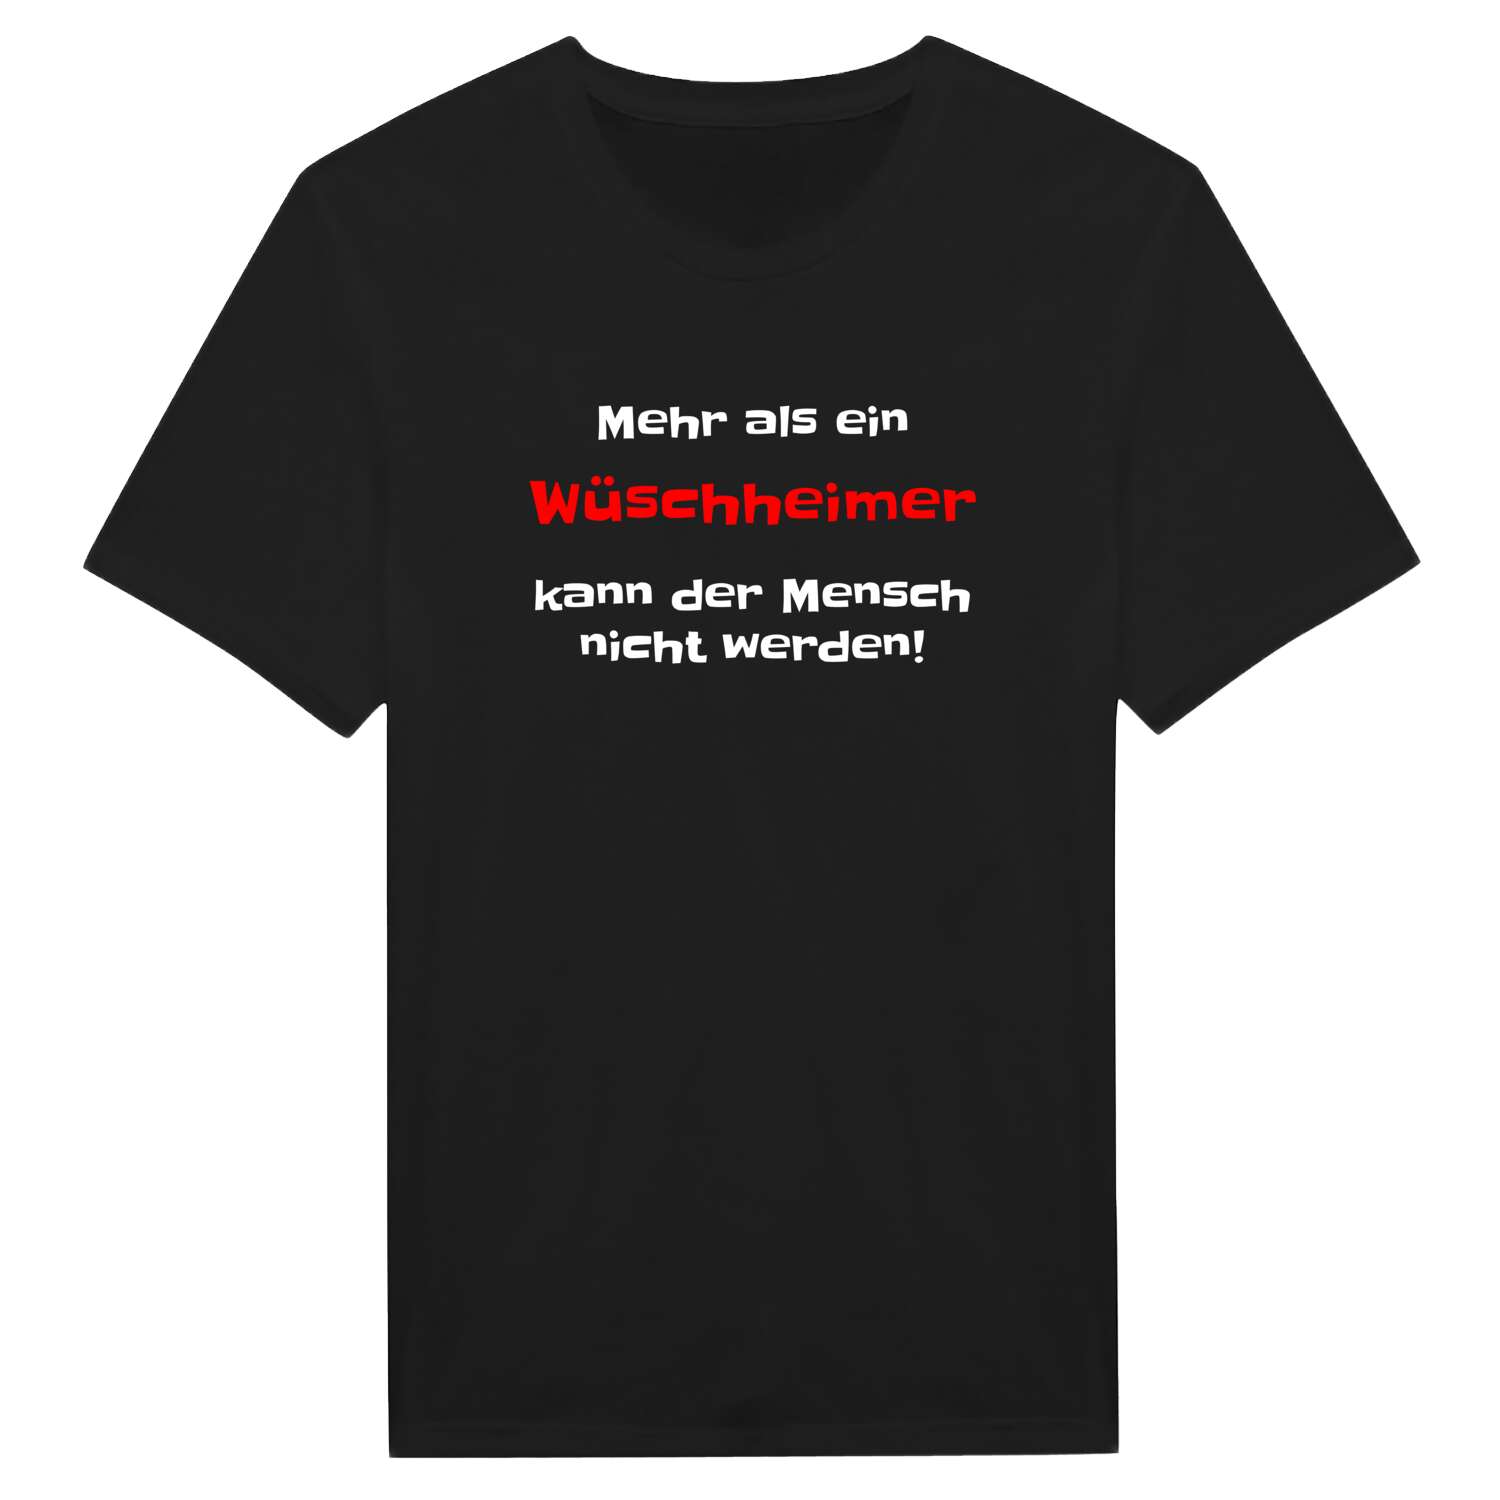 Wüschheim T-Shirt »Mehr als ein«